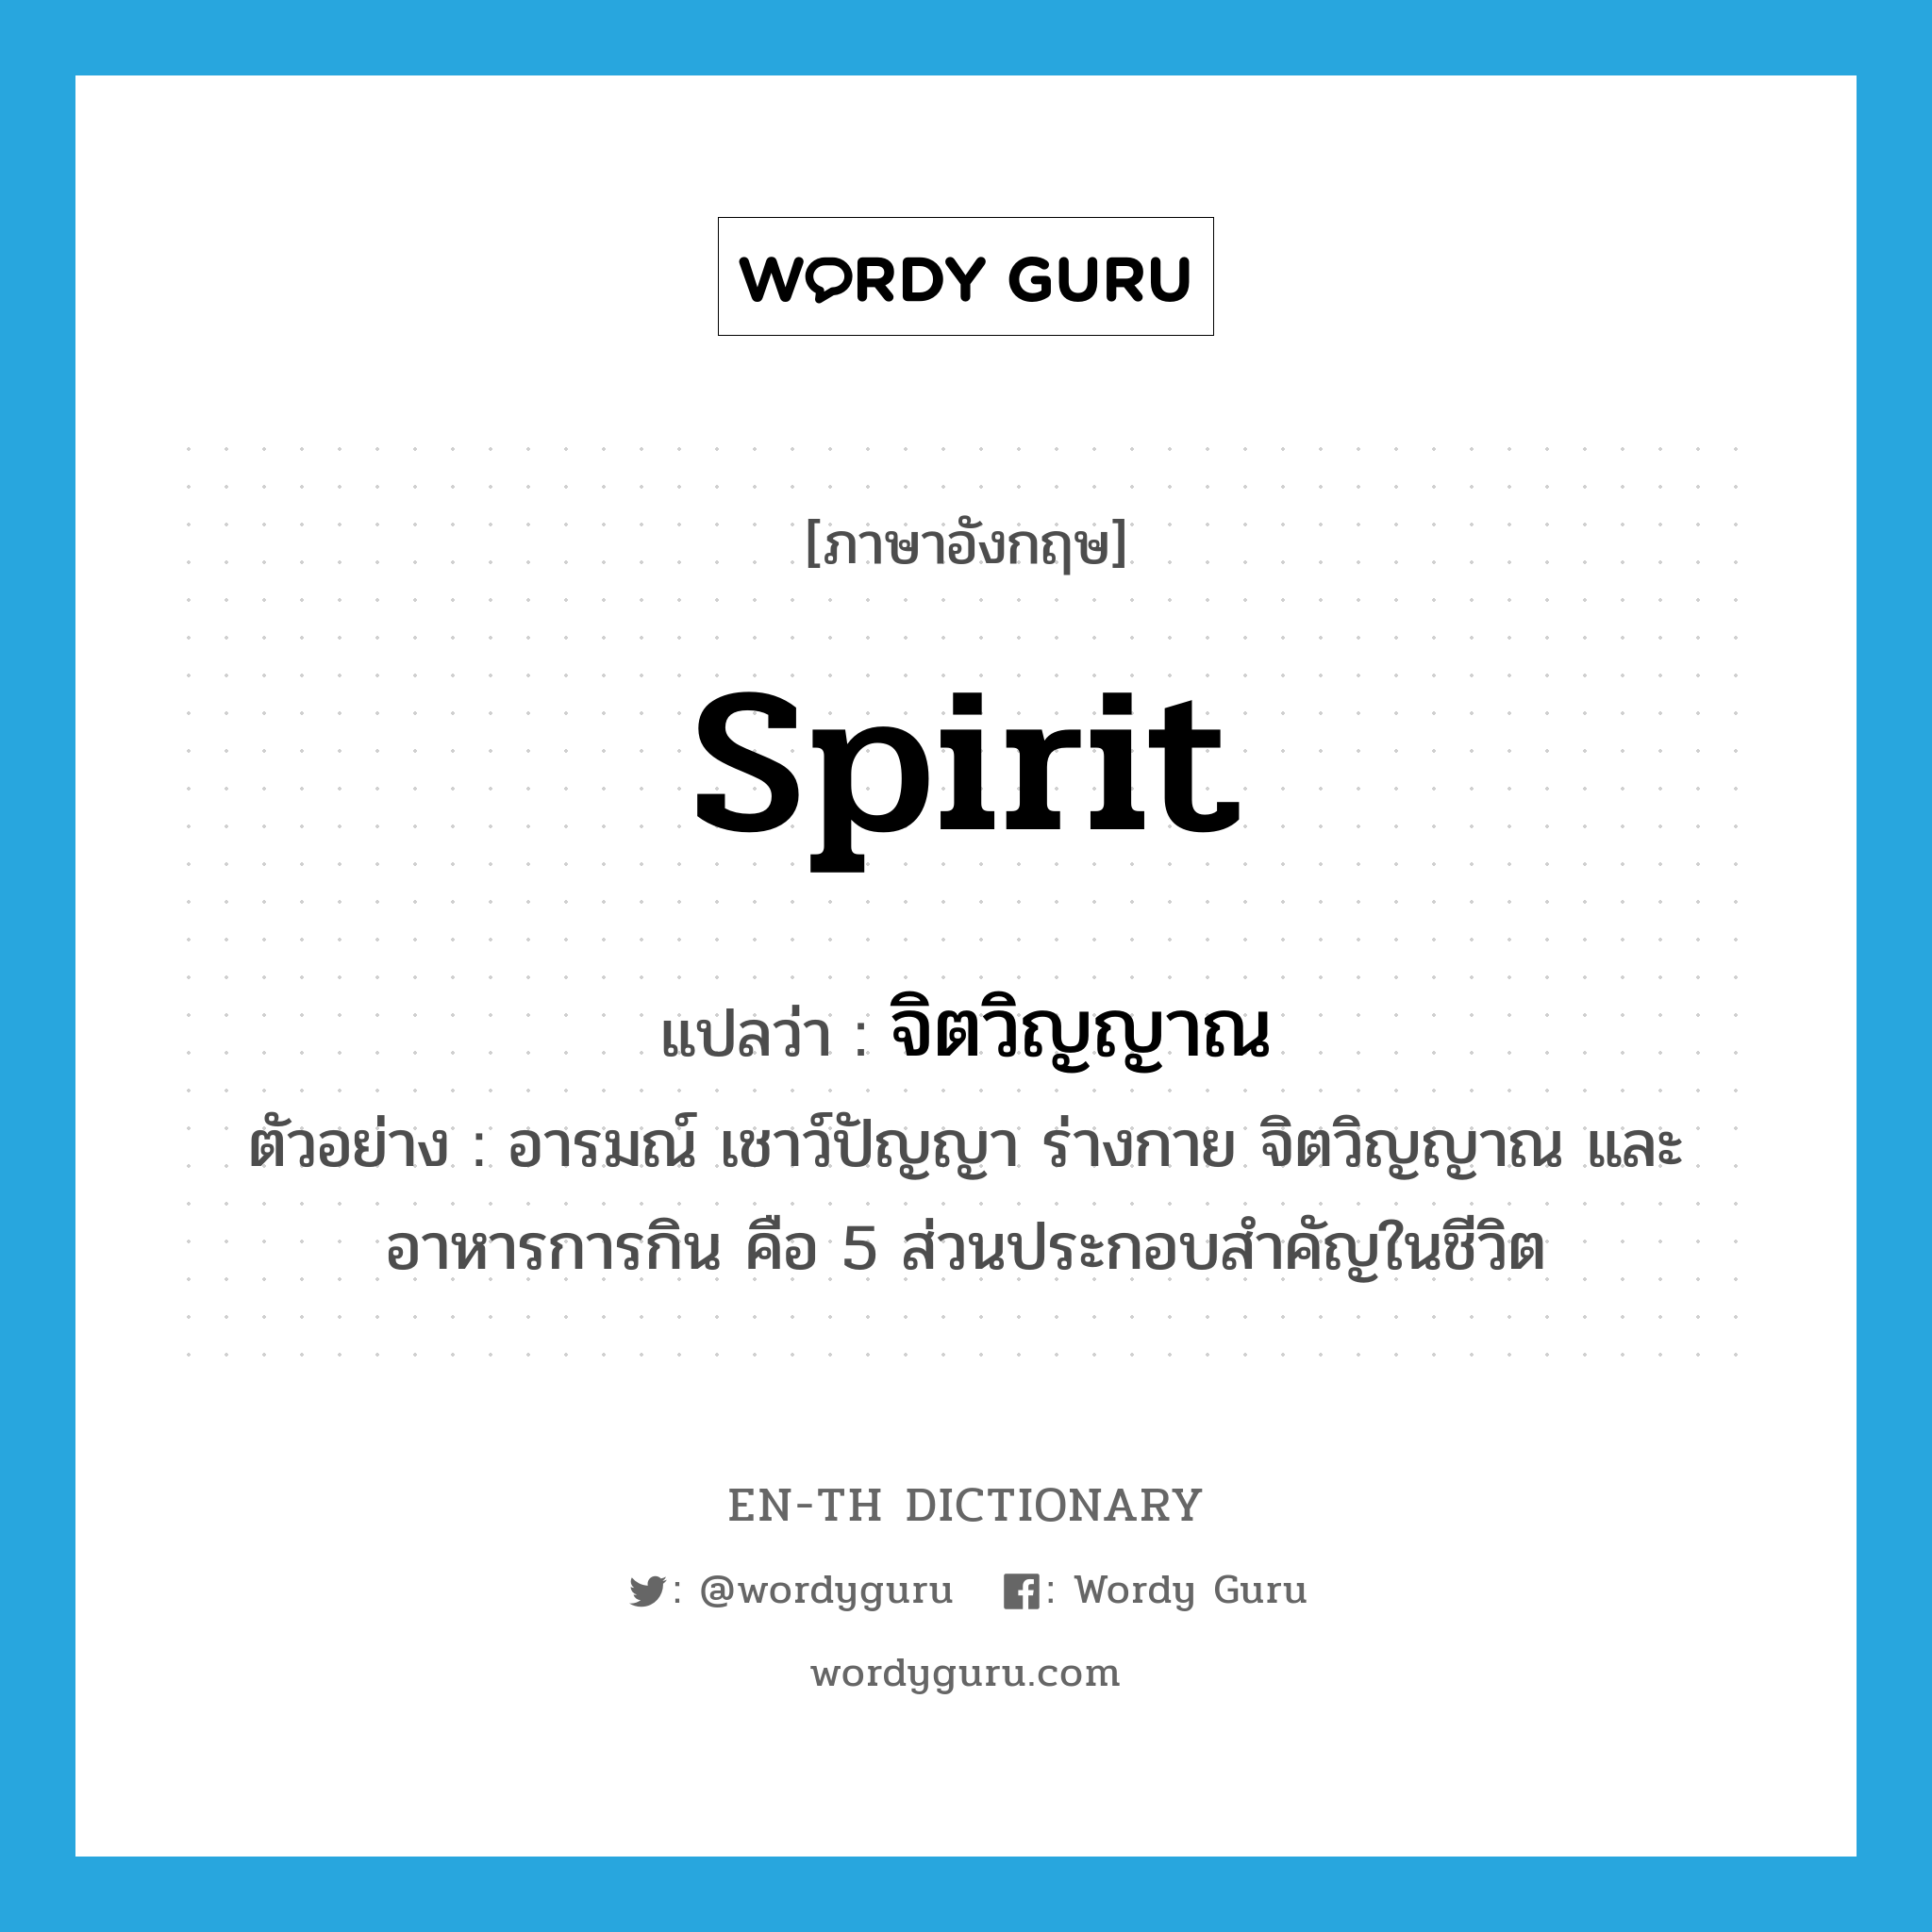 spirit แปลว่า?, คำศัพท์ภาษาอังกฤษ spirit แปลว่า จิตวิญญาณ ประเภท N ตัวอย่าง อารมณ์ เชาว์ปัญญา ร่างกาย จิตวิญญาณ และอาหารการกิน คือ 5 ส่วนประกอบสำคัญในชีวิต หมวด N